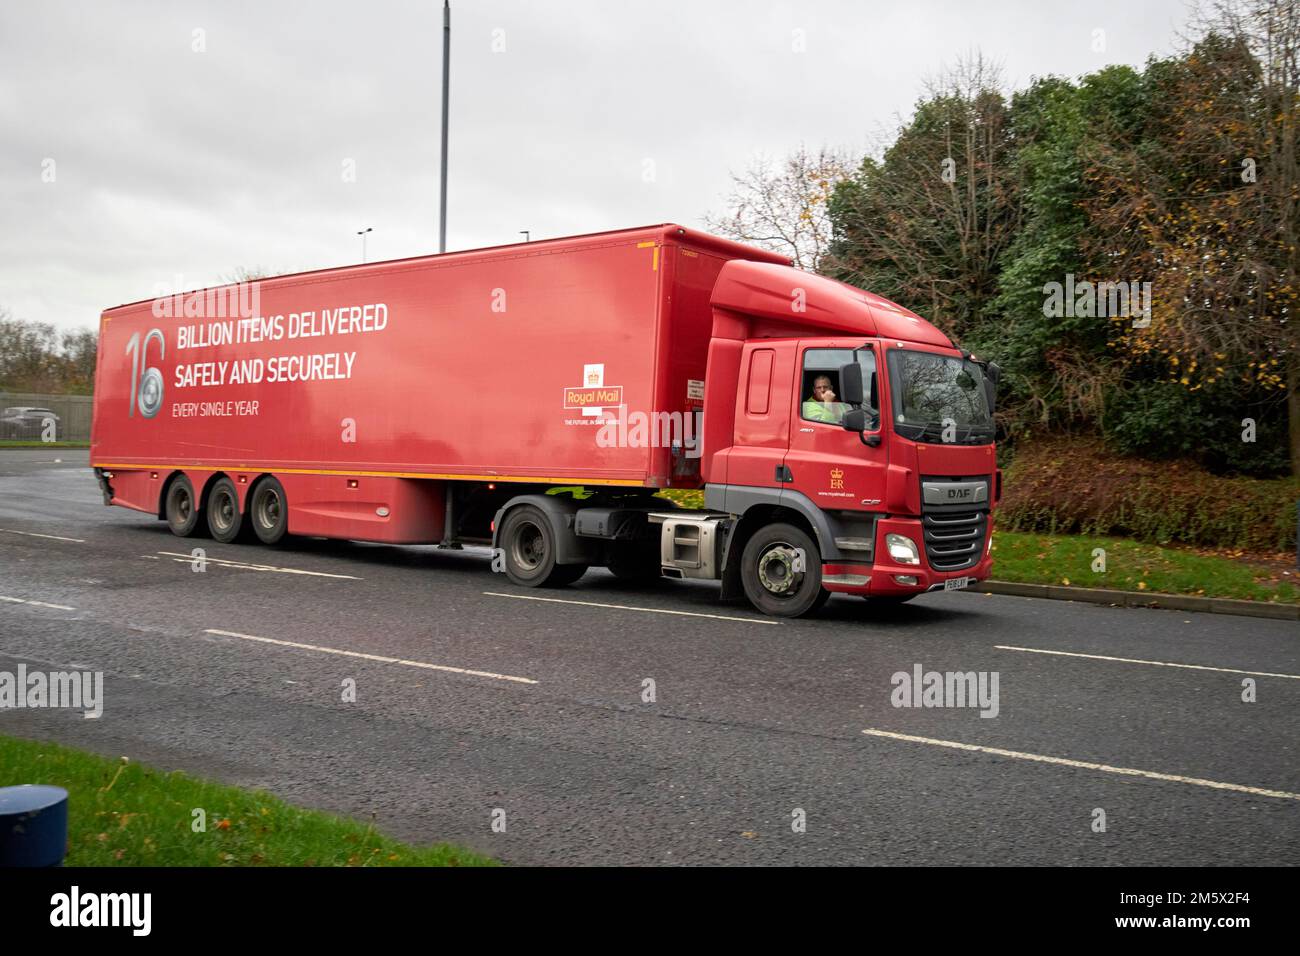 royal mail daf camion articulé avec des chargements en vrac de courrier newtownabbabbabbabbabbabbabbabbabbabbabbatiale, irlande Banque D'Images